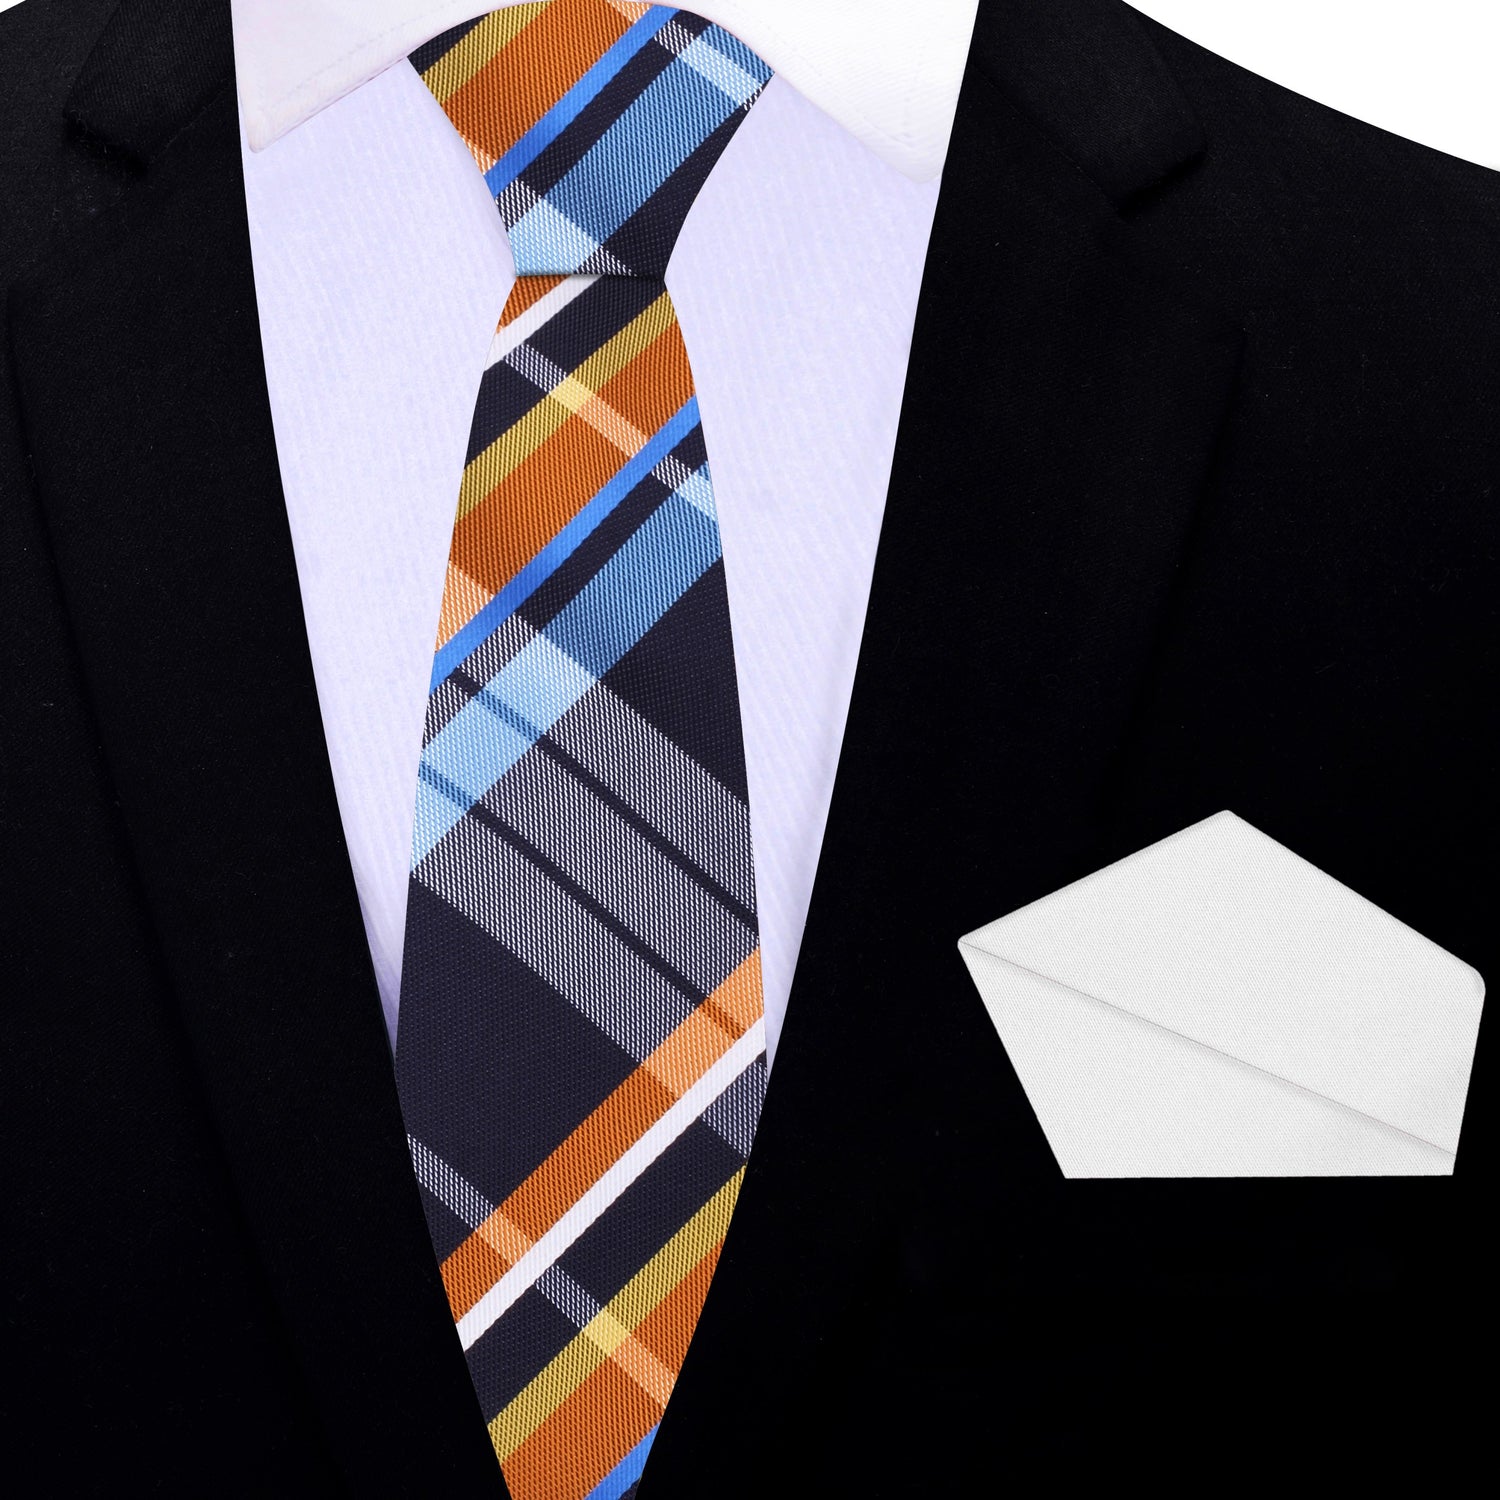 Thin Tie: Blue, Orange, White Plaid Necktie and White Square